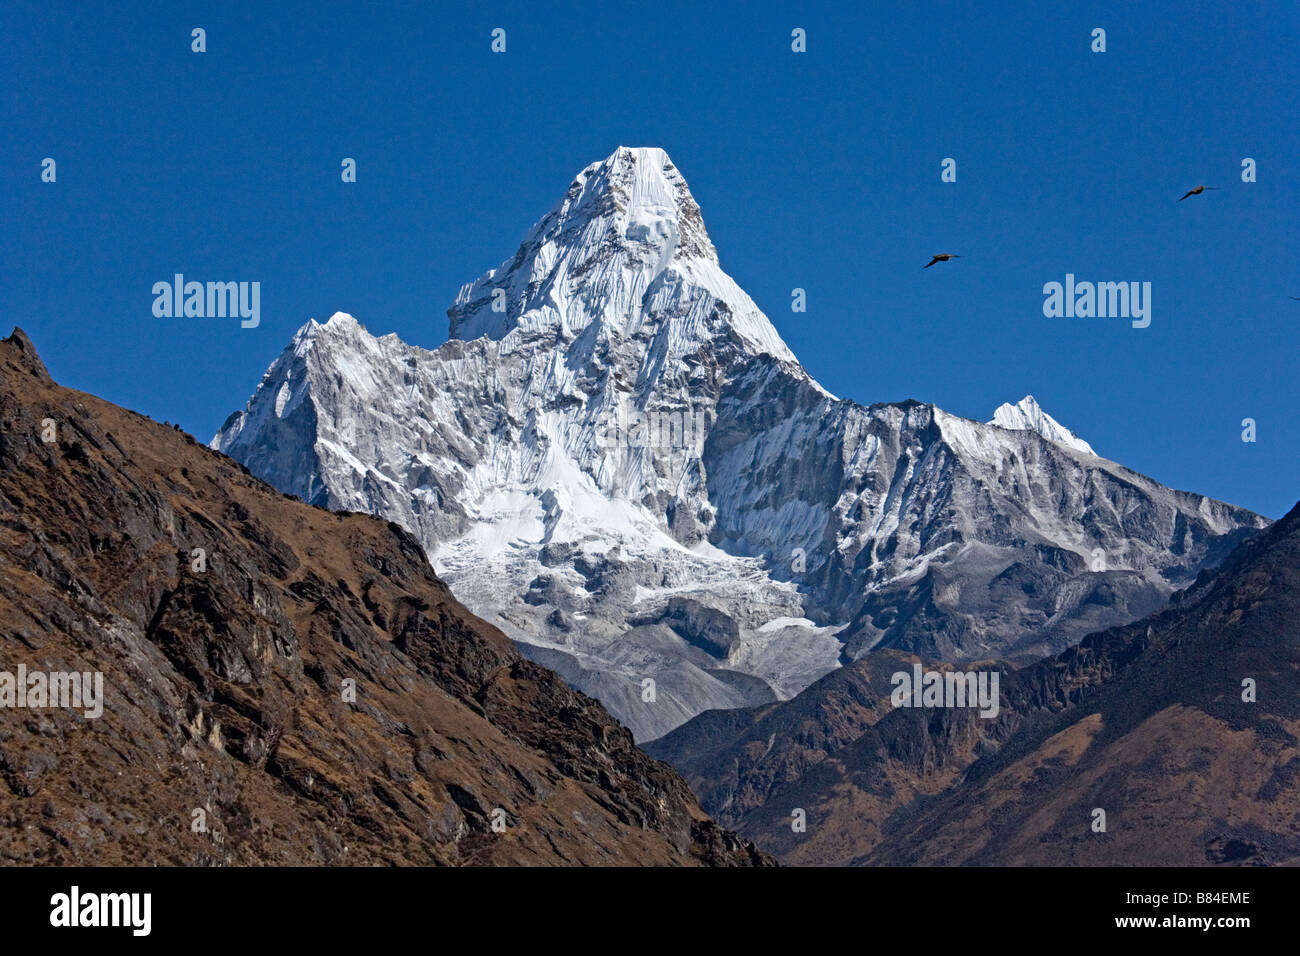 Majestic Mountain come visto Mt Amadablam nella regione di Khumbu Everest valley Sito Patrimonio dell'umanità Parco nazionale di Sagarmatha Il Nepal Foto Stock